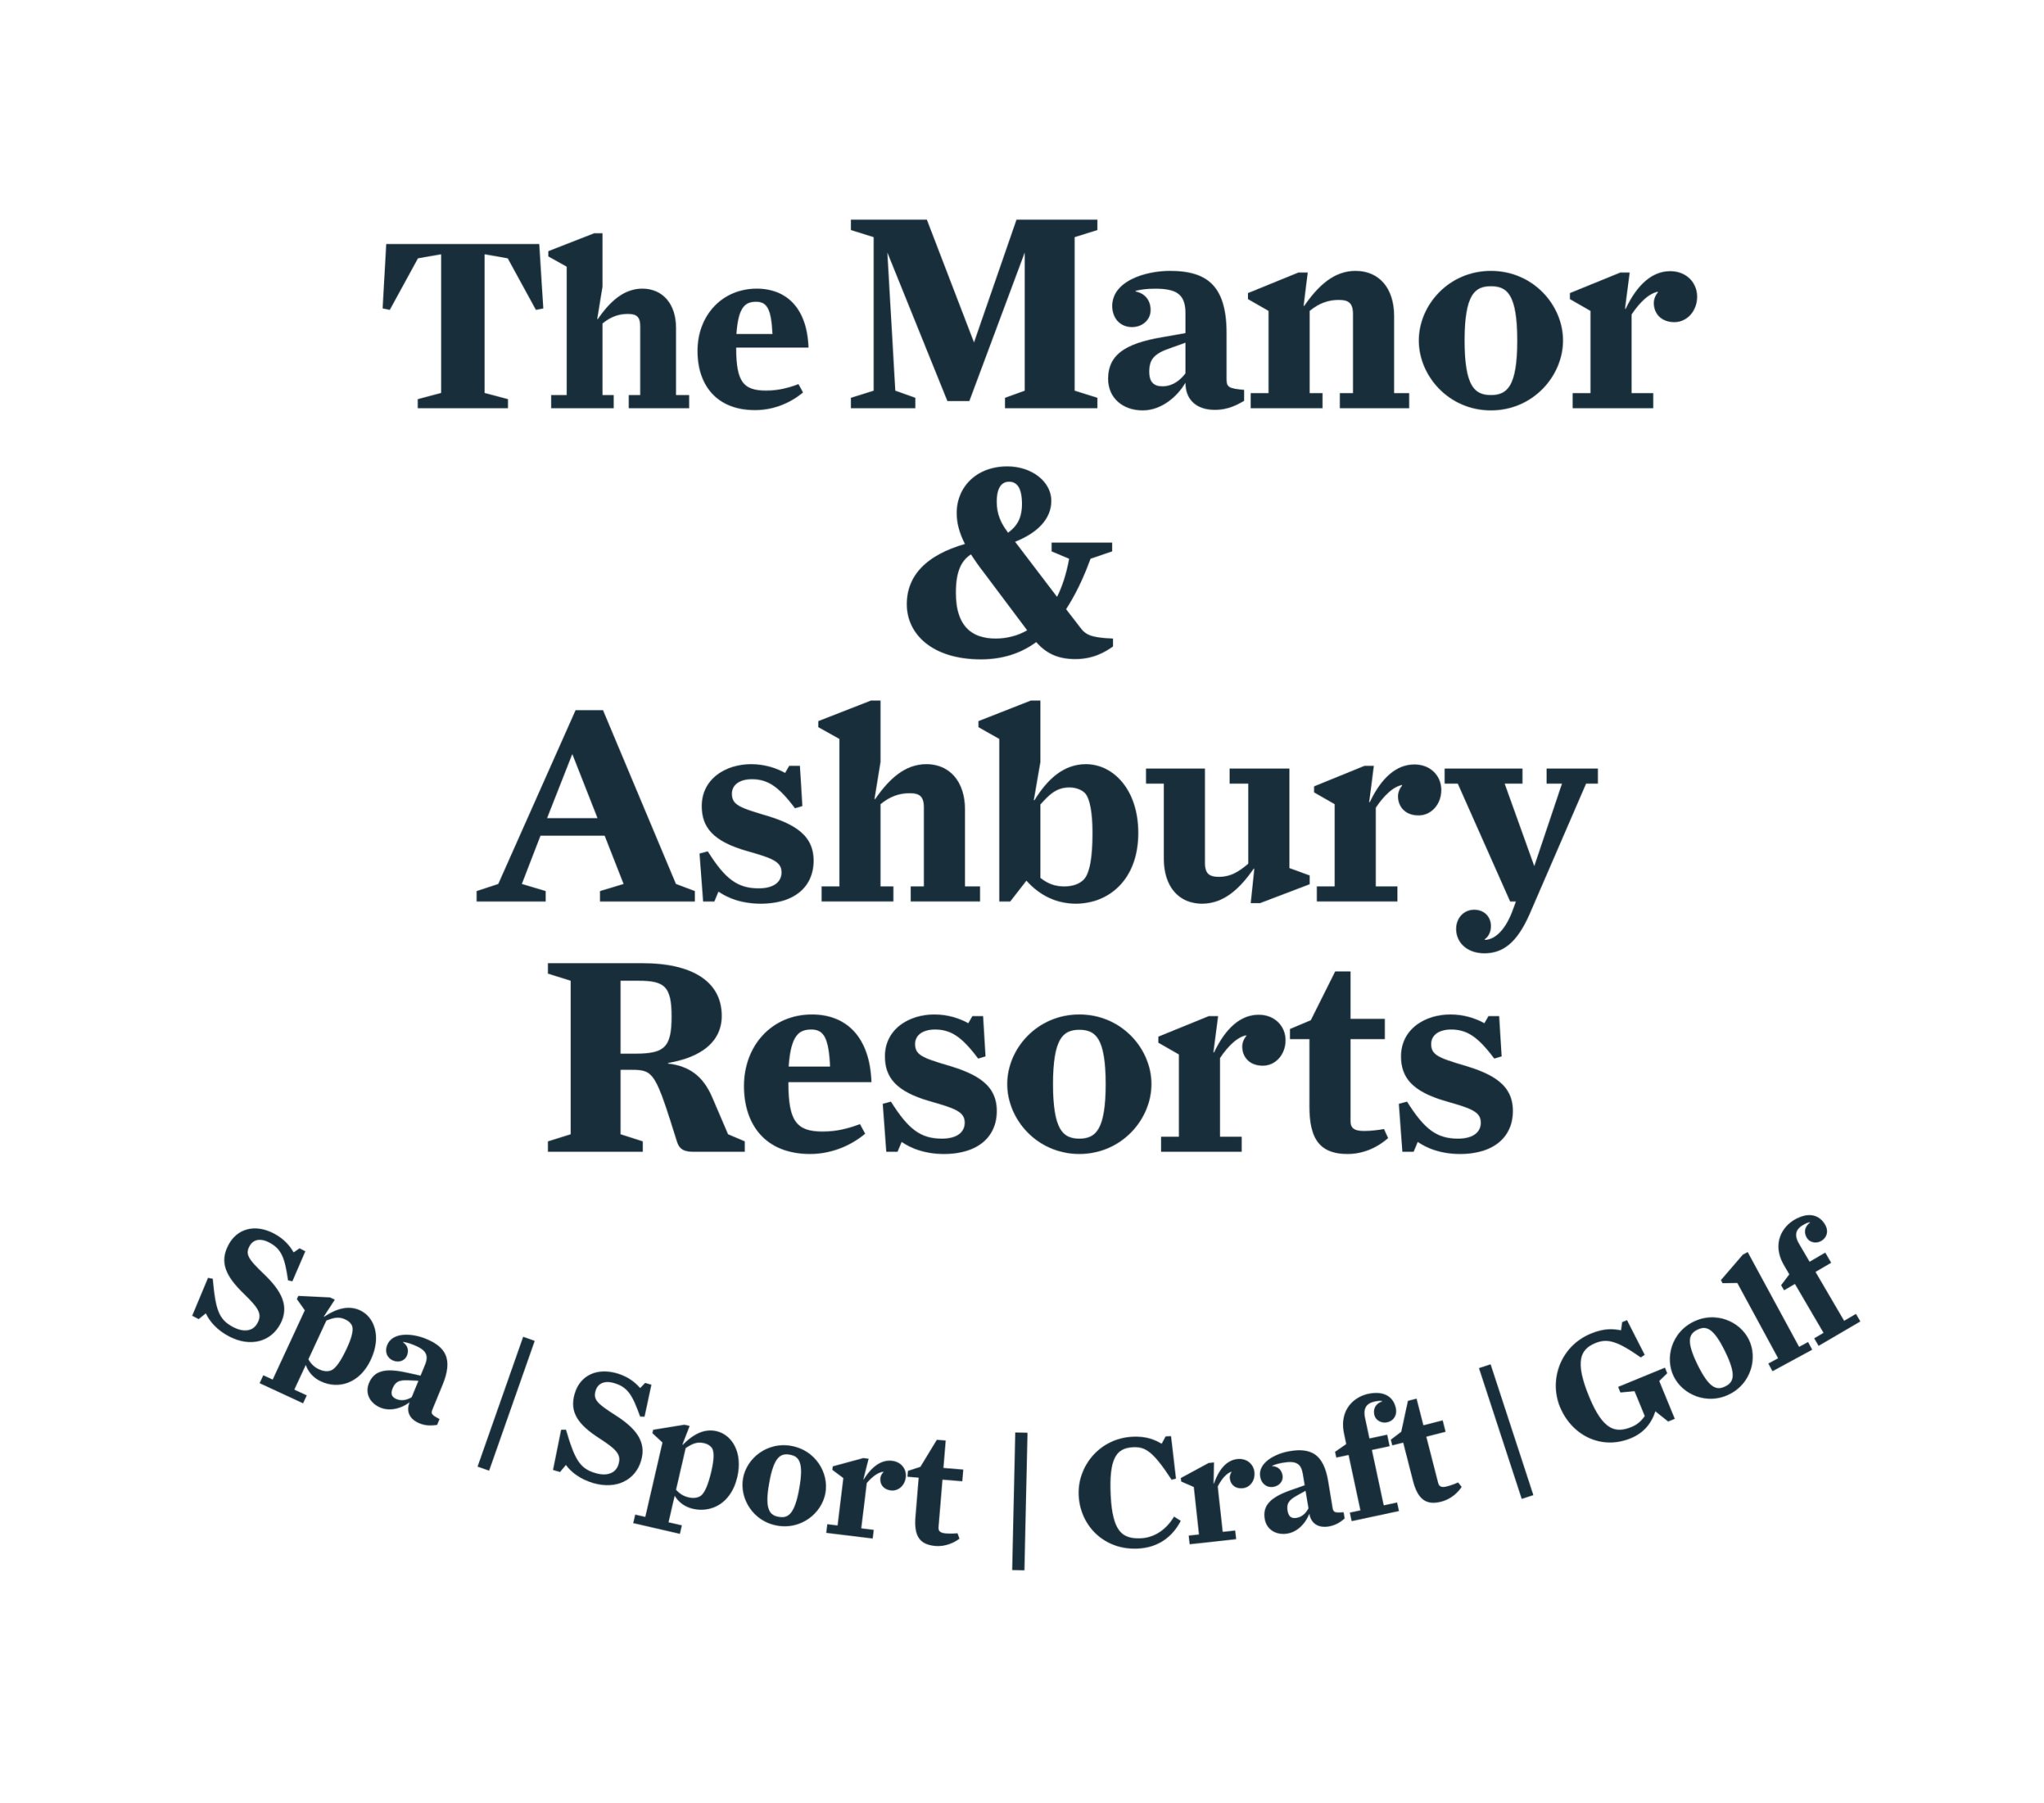 The Manor & Ashbury Resorts